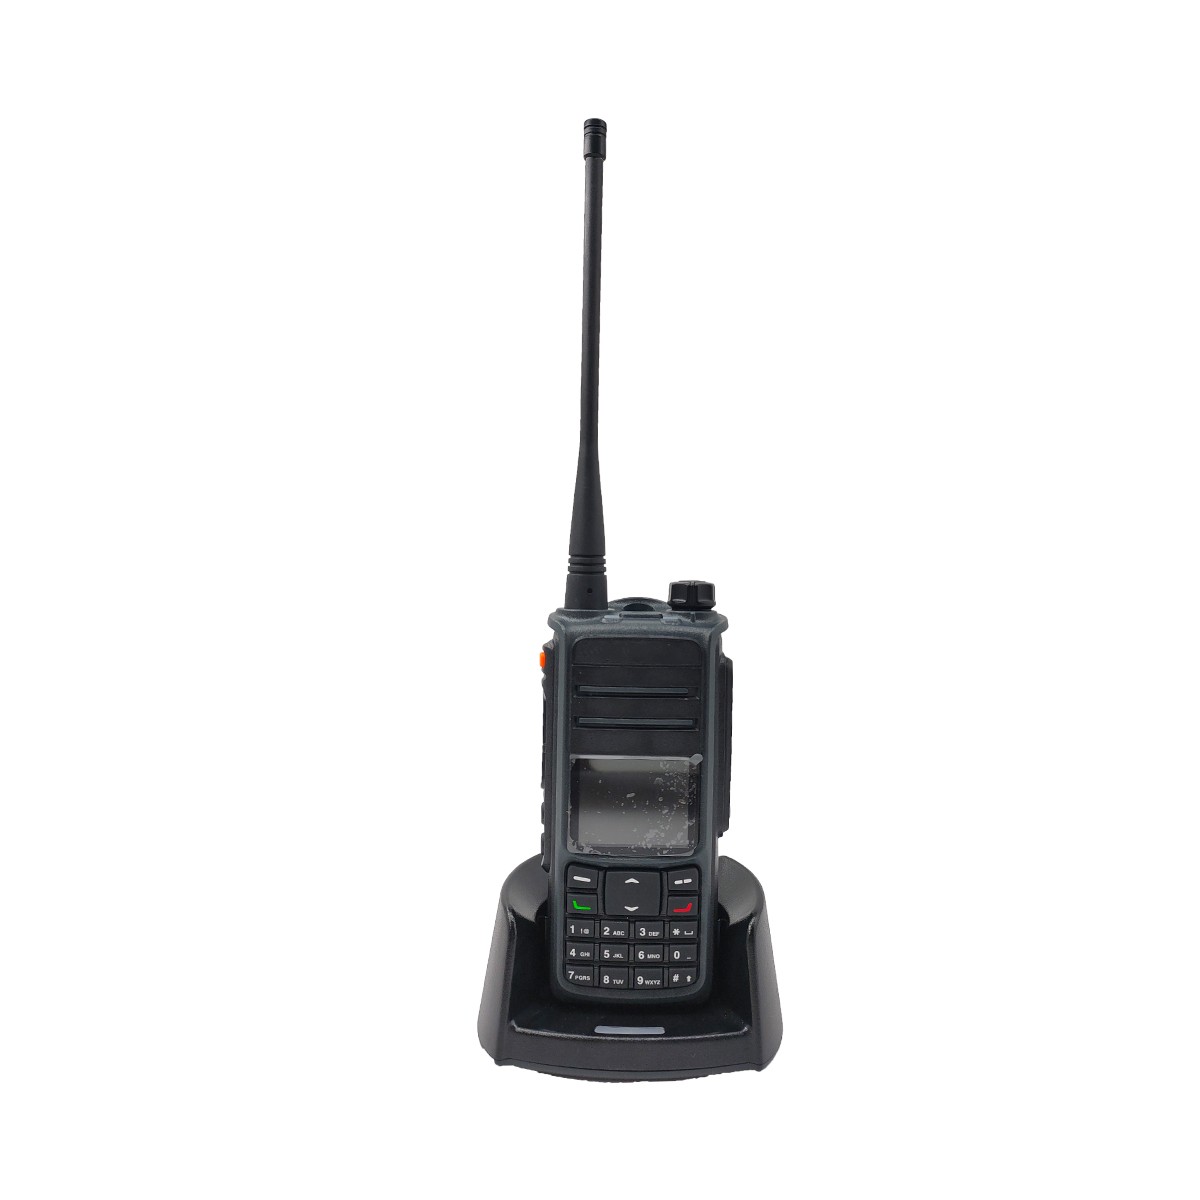 QYT cyfrowy analogowy podwójny tryb dmr gps walkie talkie UV-D67H;
